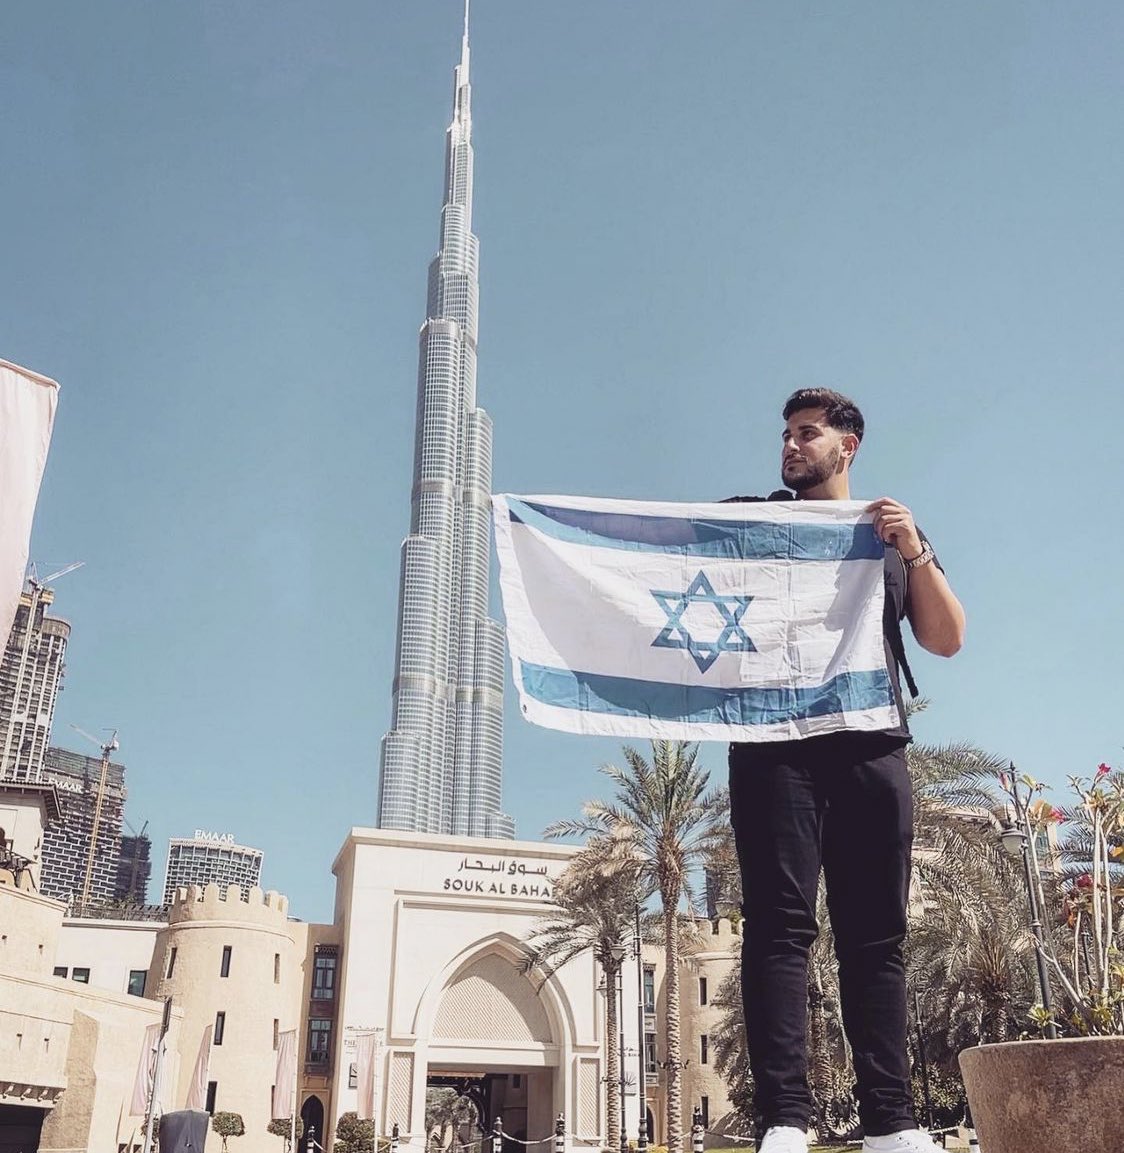 مواطن اسرائيلي يرفع العلم الاسرائيلي بكل فخر في الامارات العربية المتحدة @rudy_rochman ...